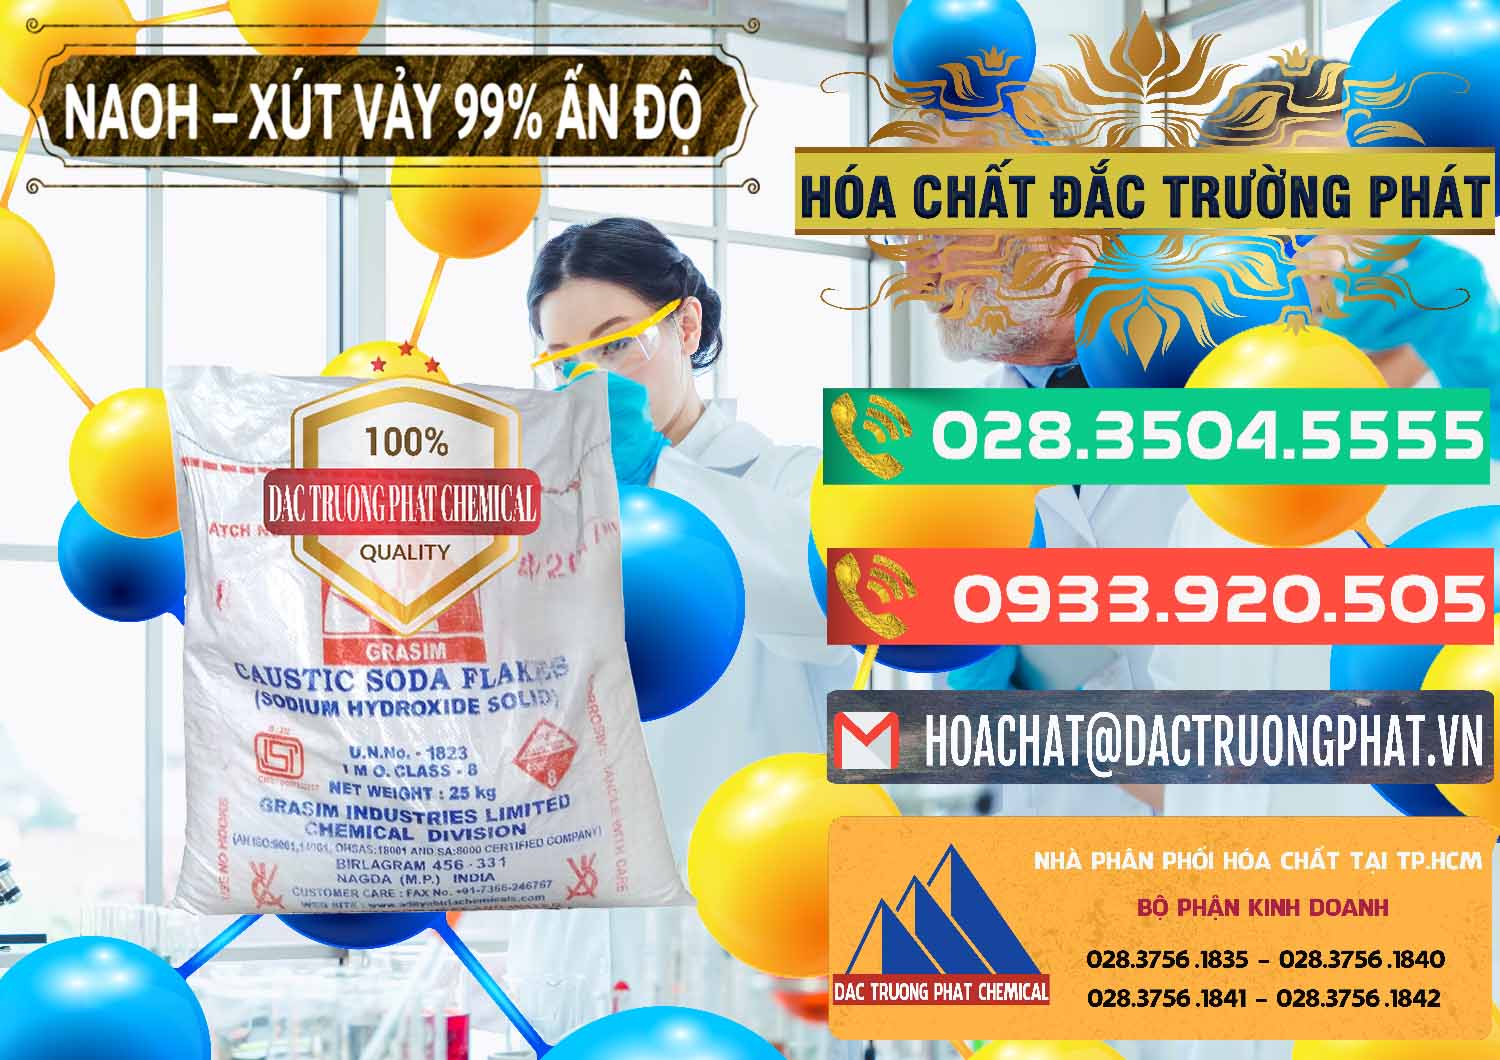 Đơn vị chuyên bán & cung cấp Xút Vảy - NaOH Vảy 99% Aditya Birla Grasim Ấn Độ India - 0171 - Phân phối - cung cấp hóa chất tại TP.HCM - congtyhoachat.com.vn